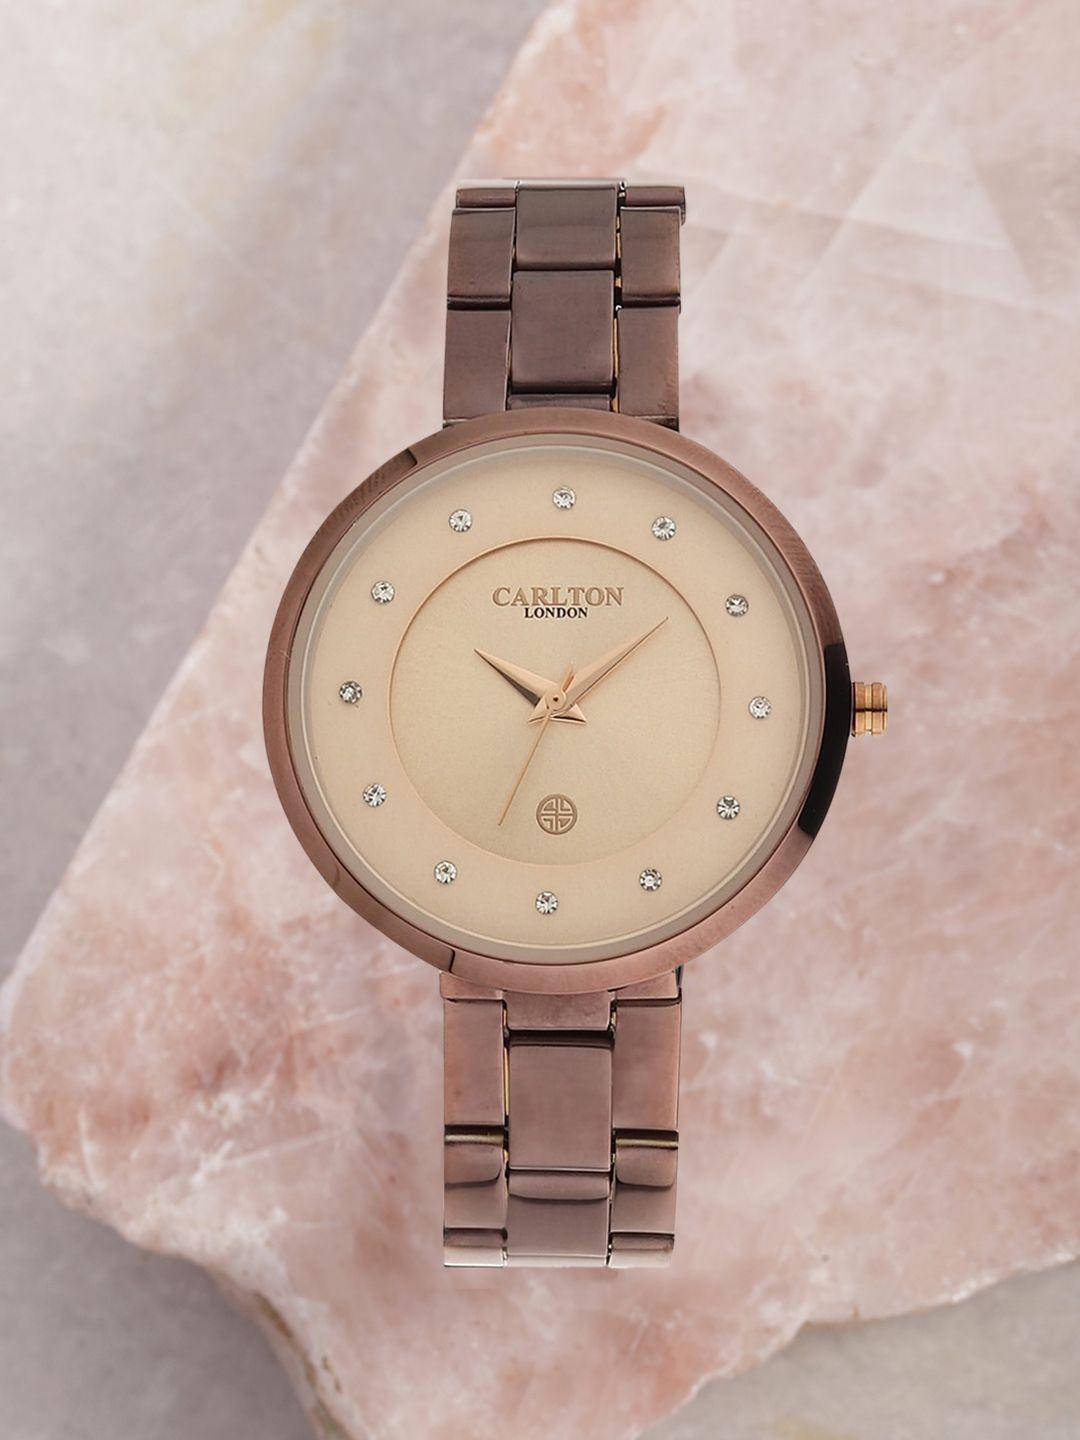 carlton-london-women-brown-&-rose-gold-analogue-watch